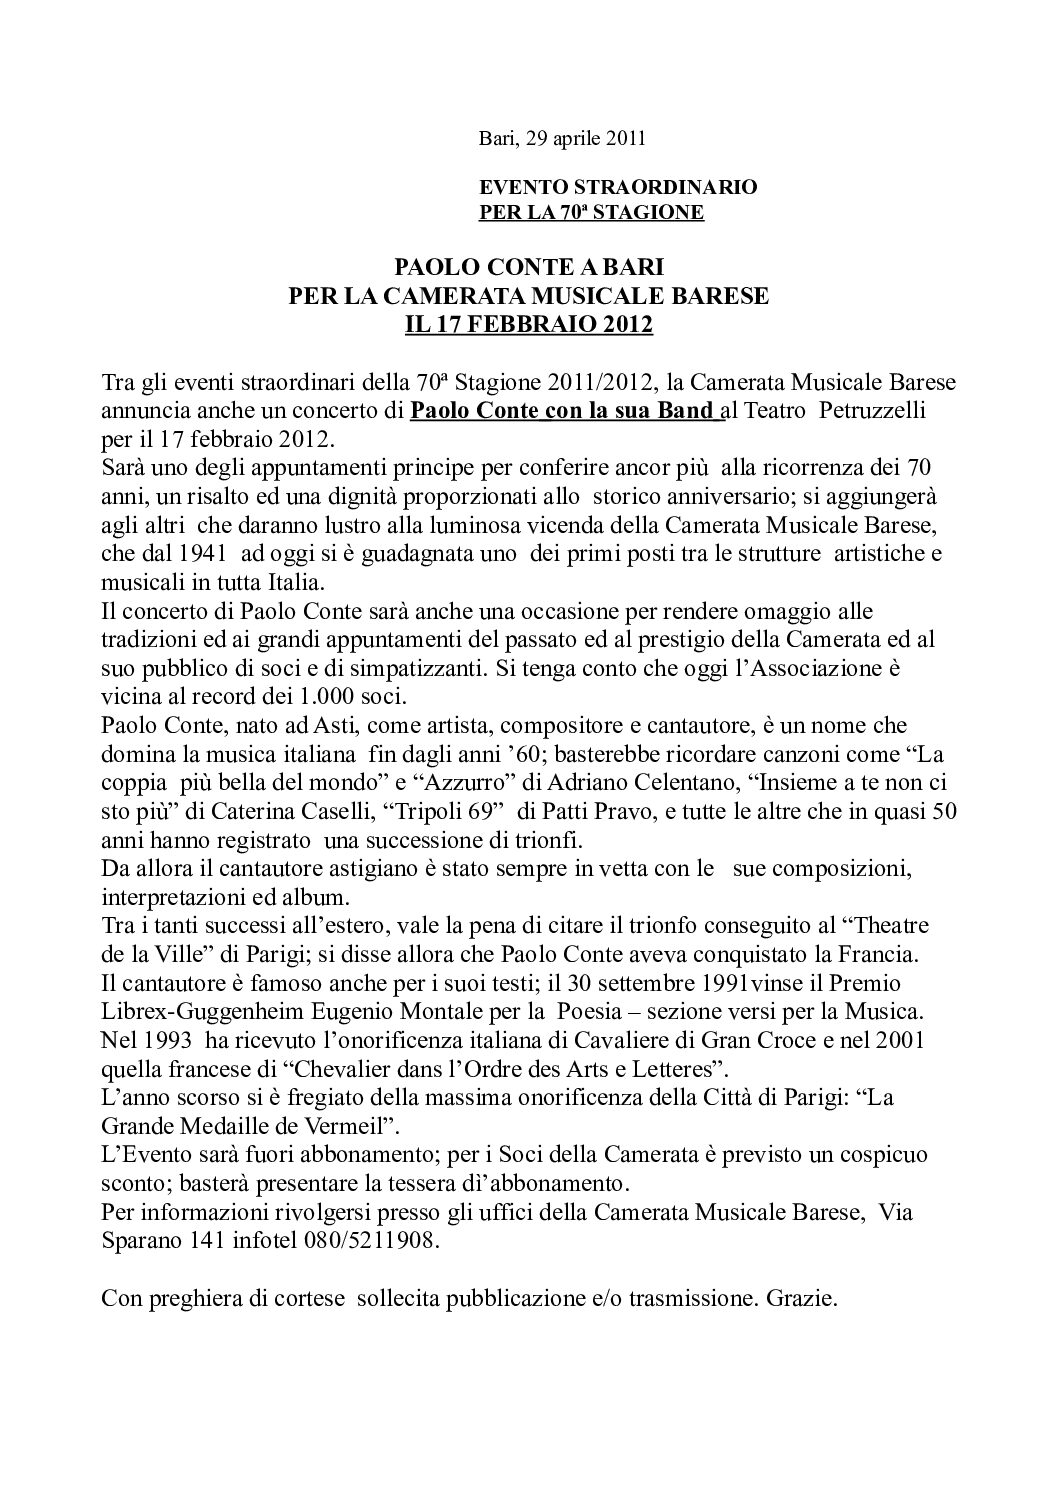 PAOLO CONTE A BARI PER LA CAMERATA MUSICALE BARESE IL 17 FEBBRAIO 2012